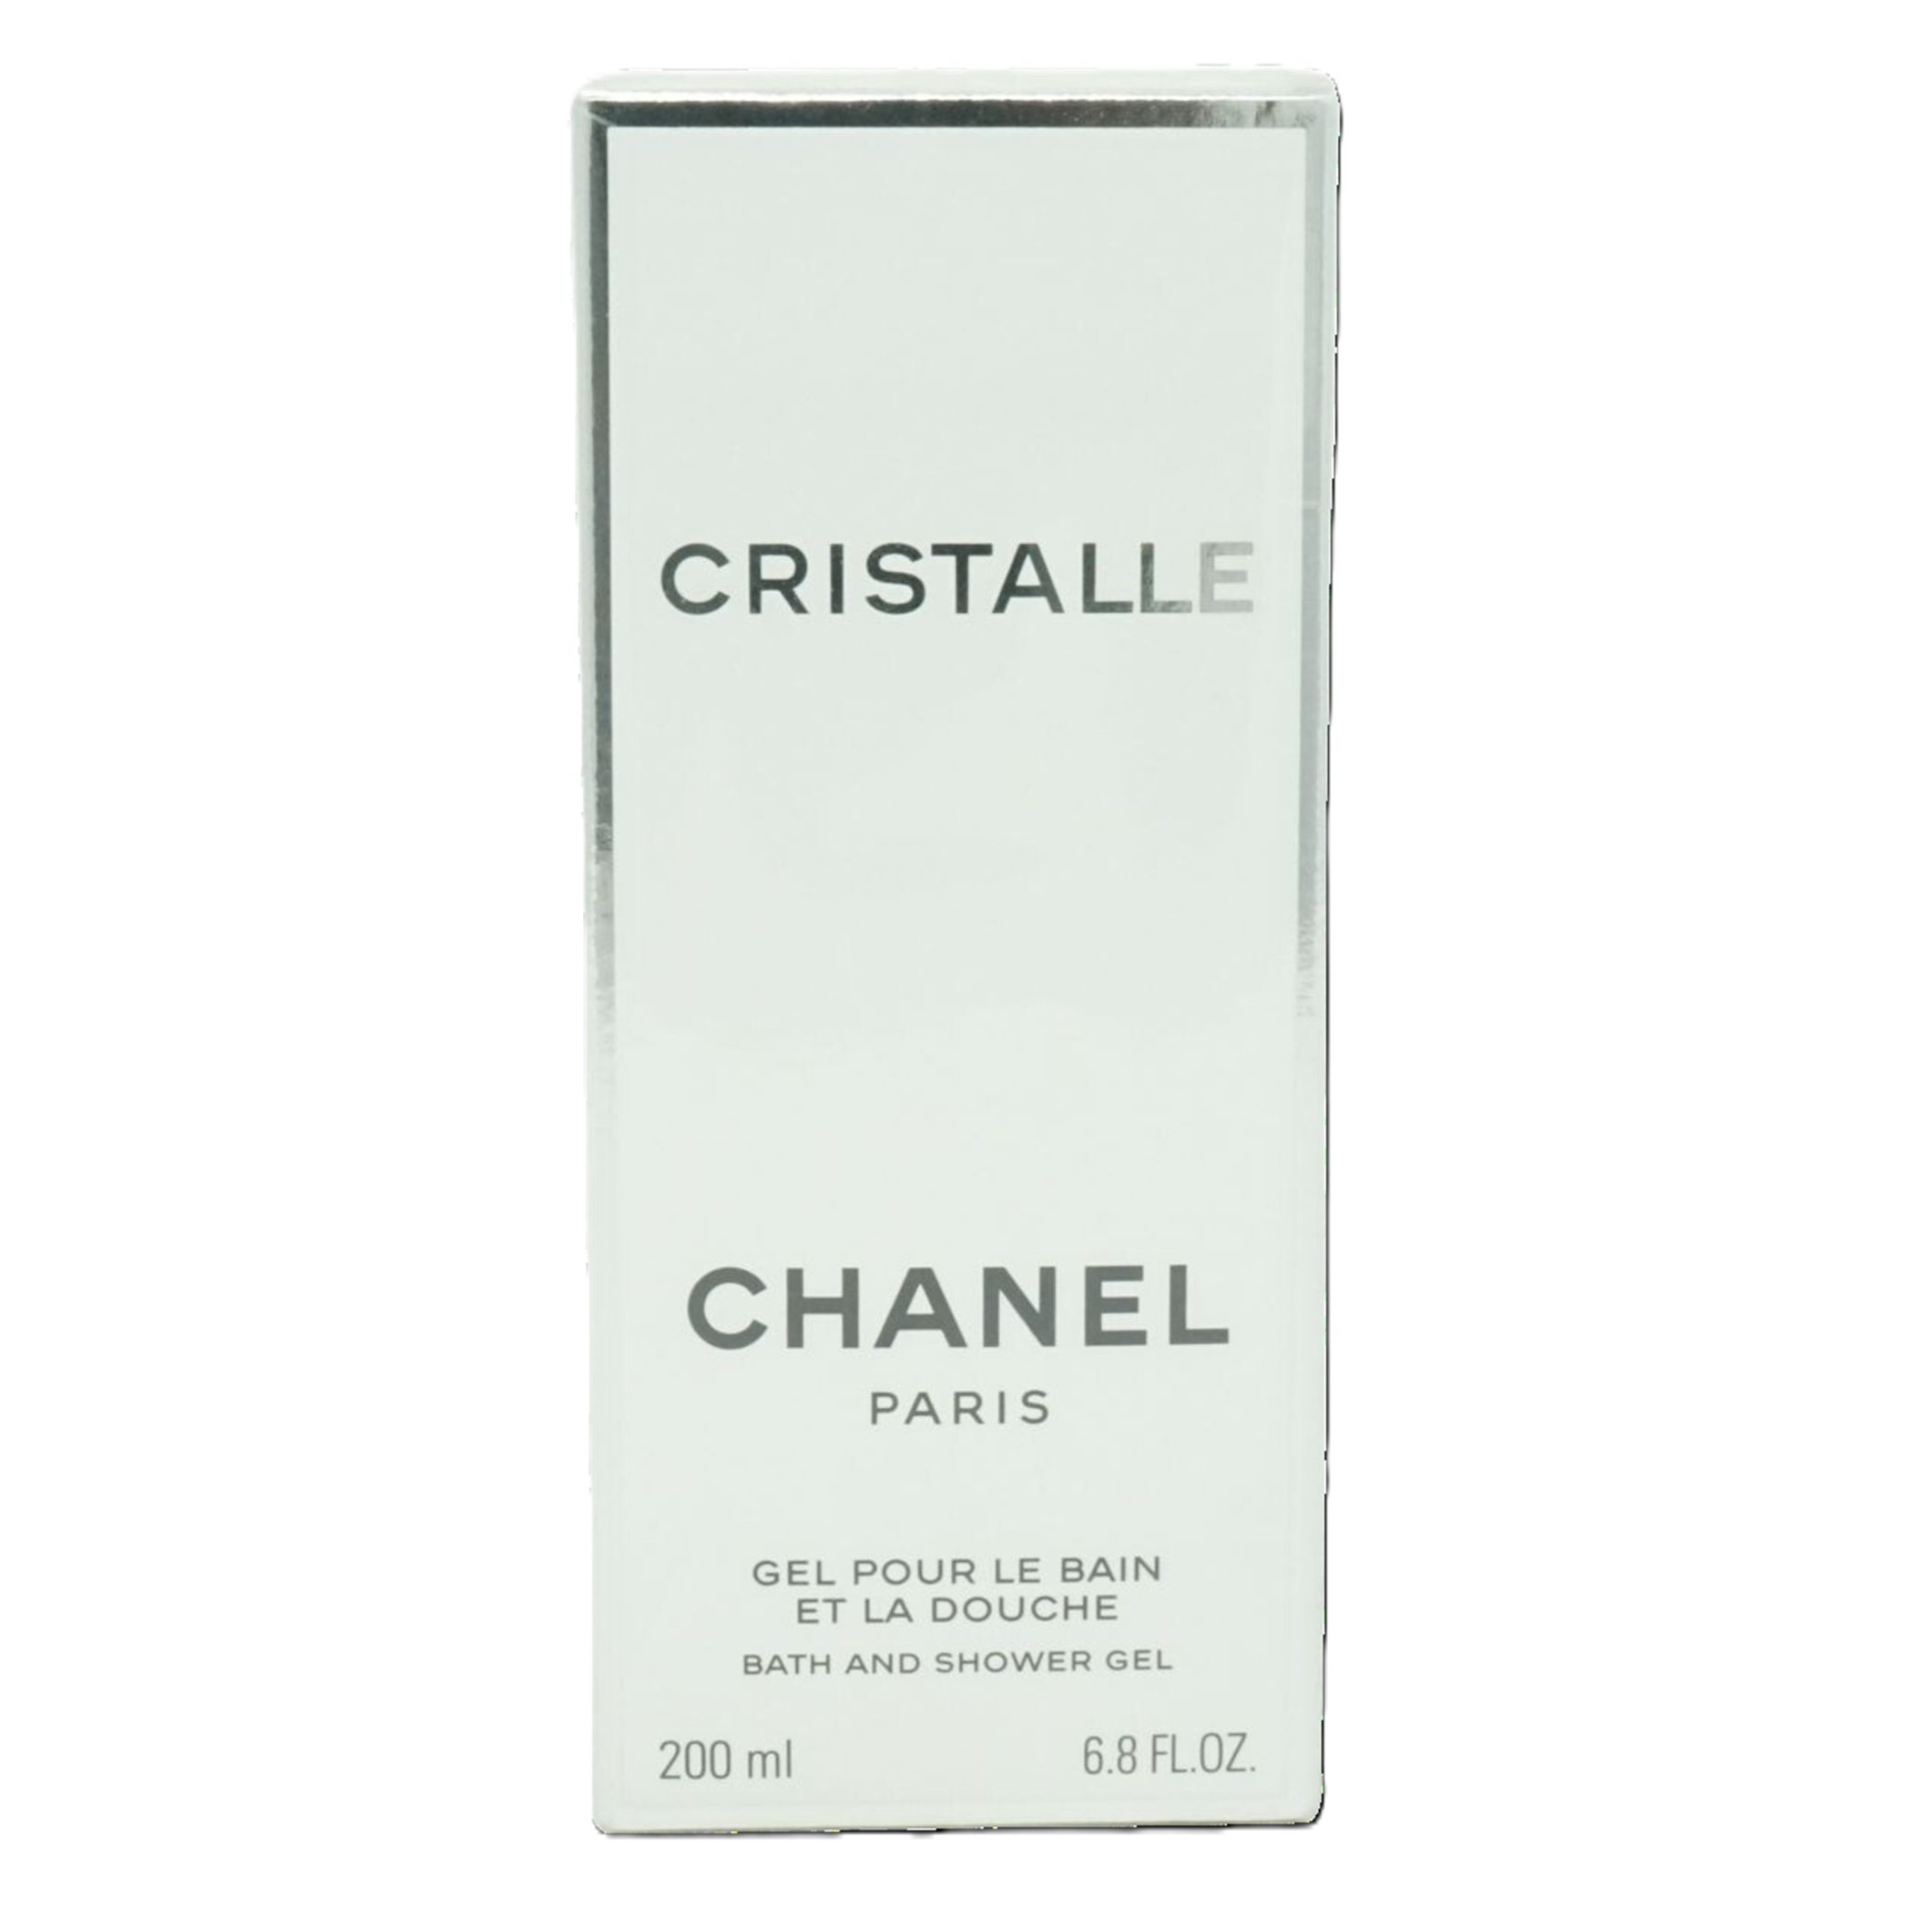 CHANEL Duschgel Chanel Cristalle Bath And Shower gel 200 ml